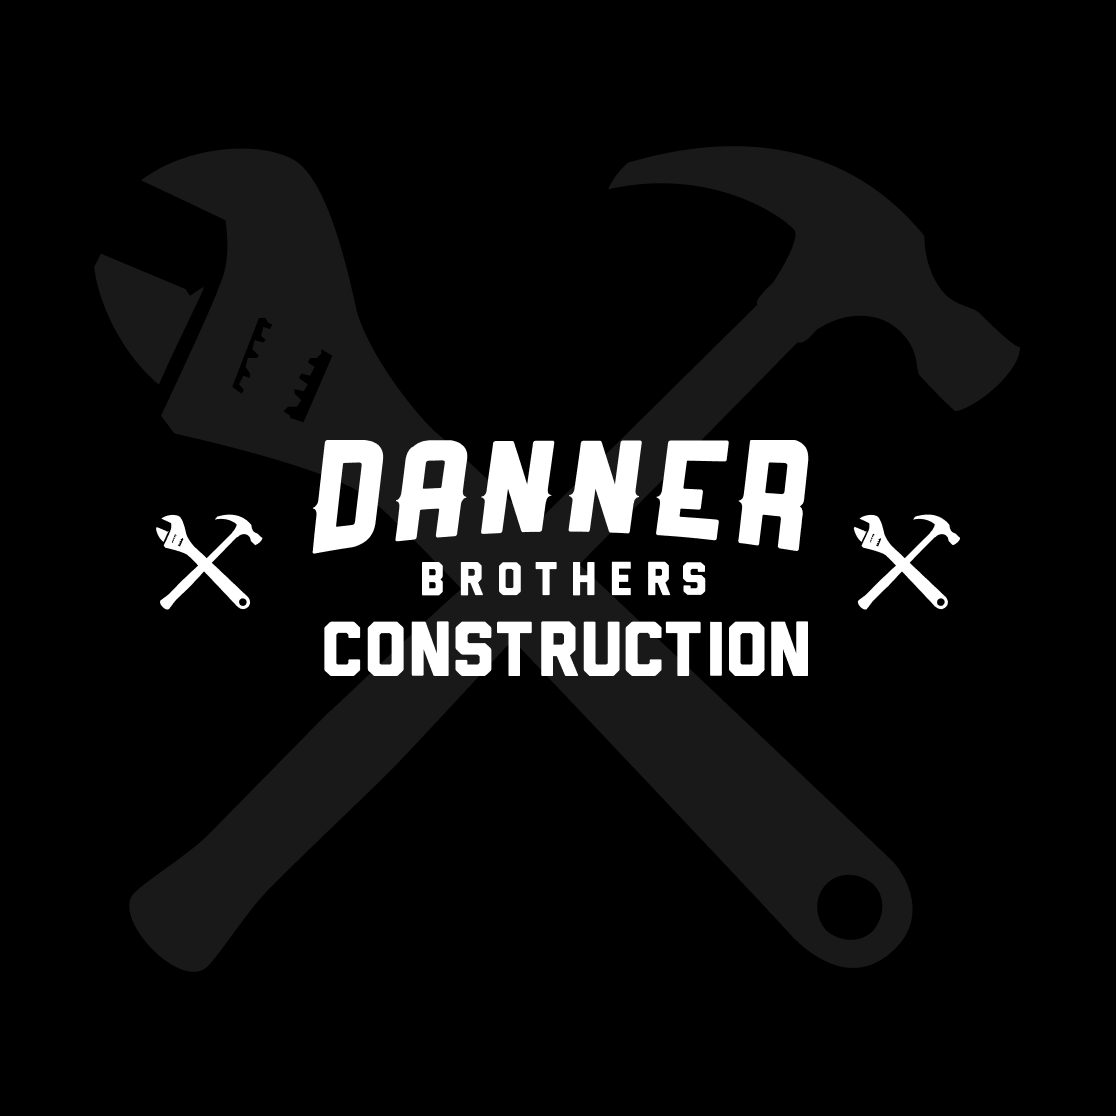 Danner Bros. Site Design